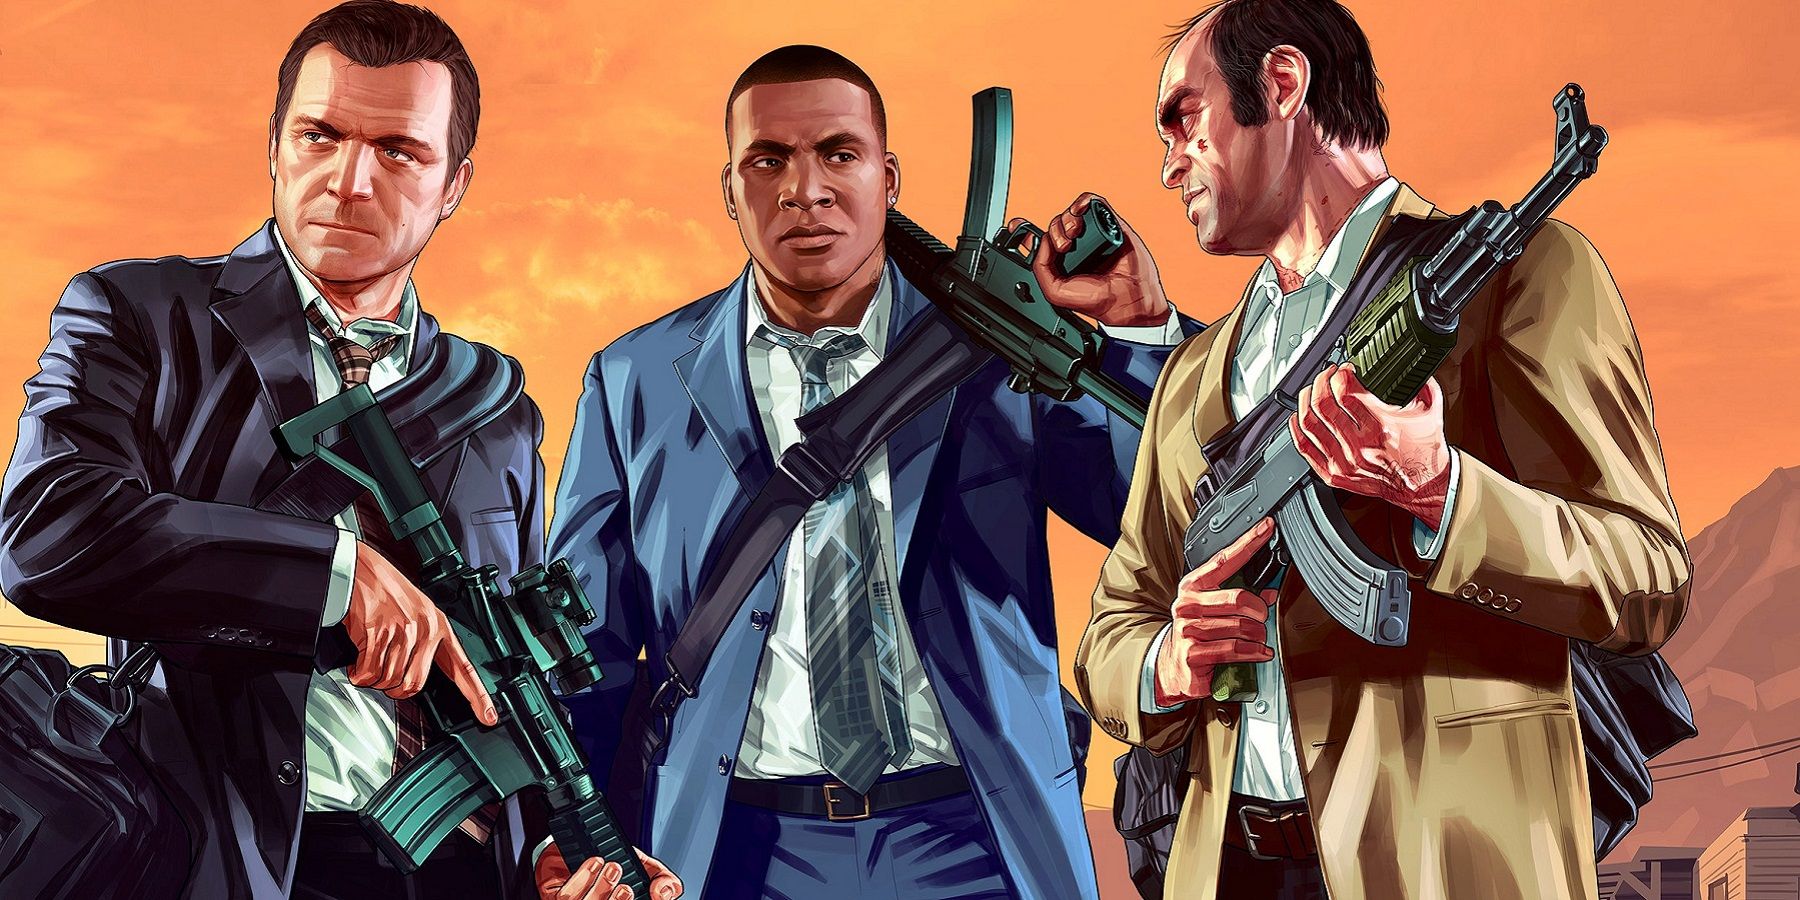 Rockstar scheint sich von Grand Theft Auto 5 zu verabschieden